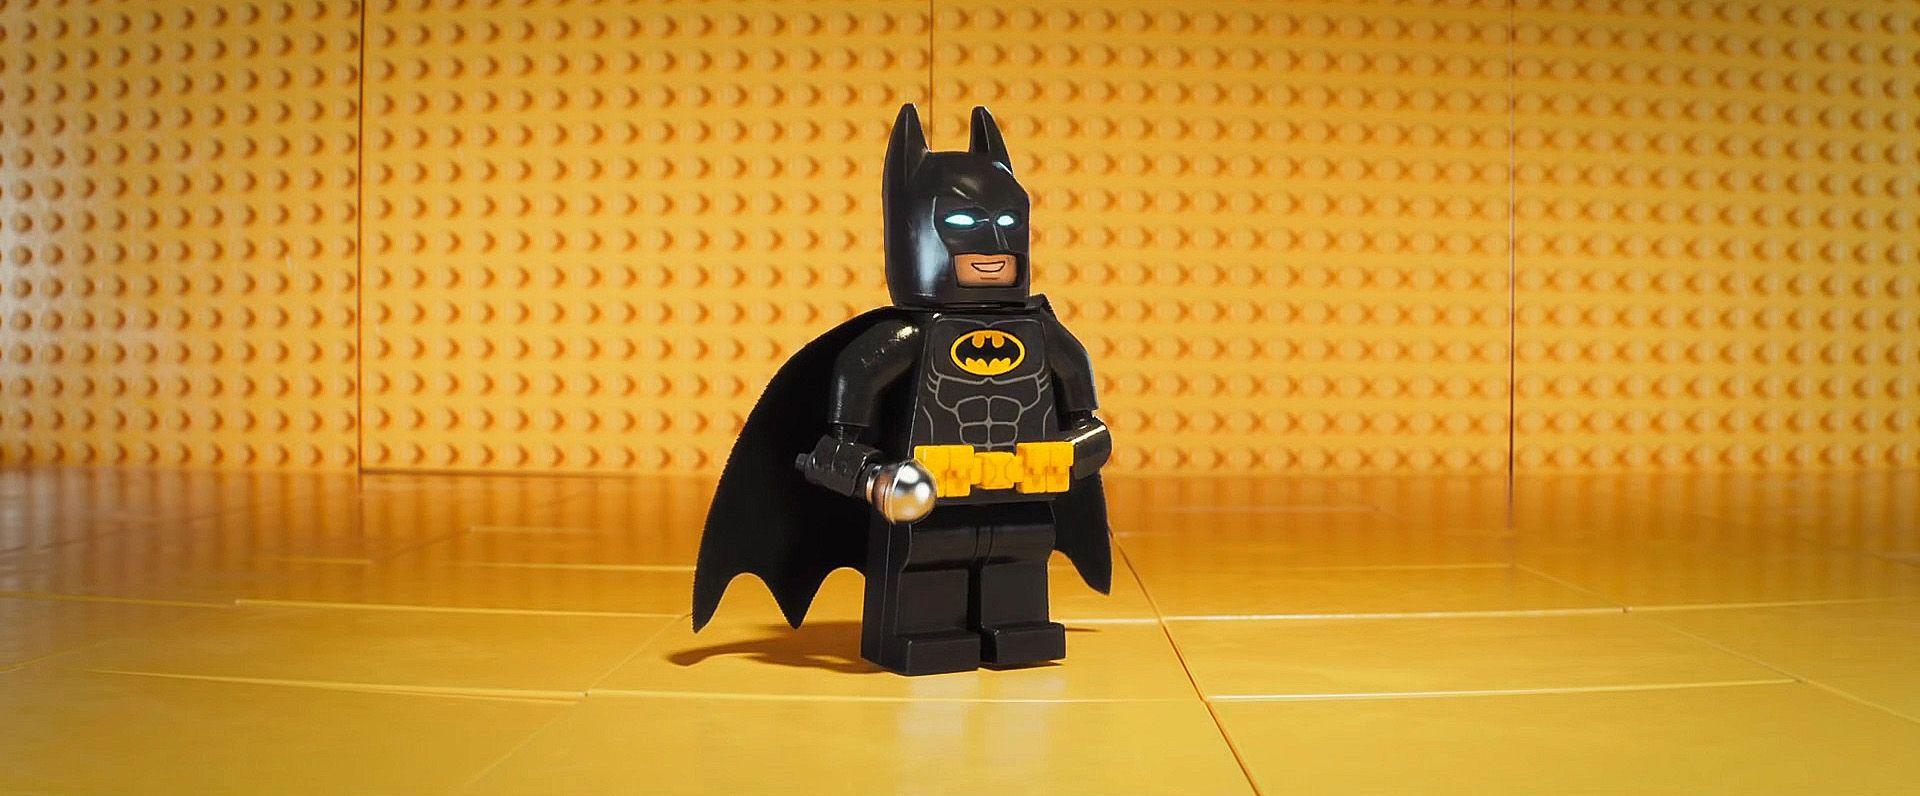 The Lego Batman Wallpaper, Download Free HD Wallpaper